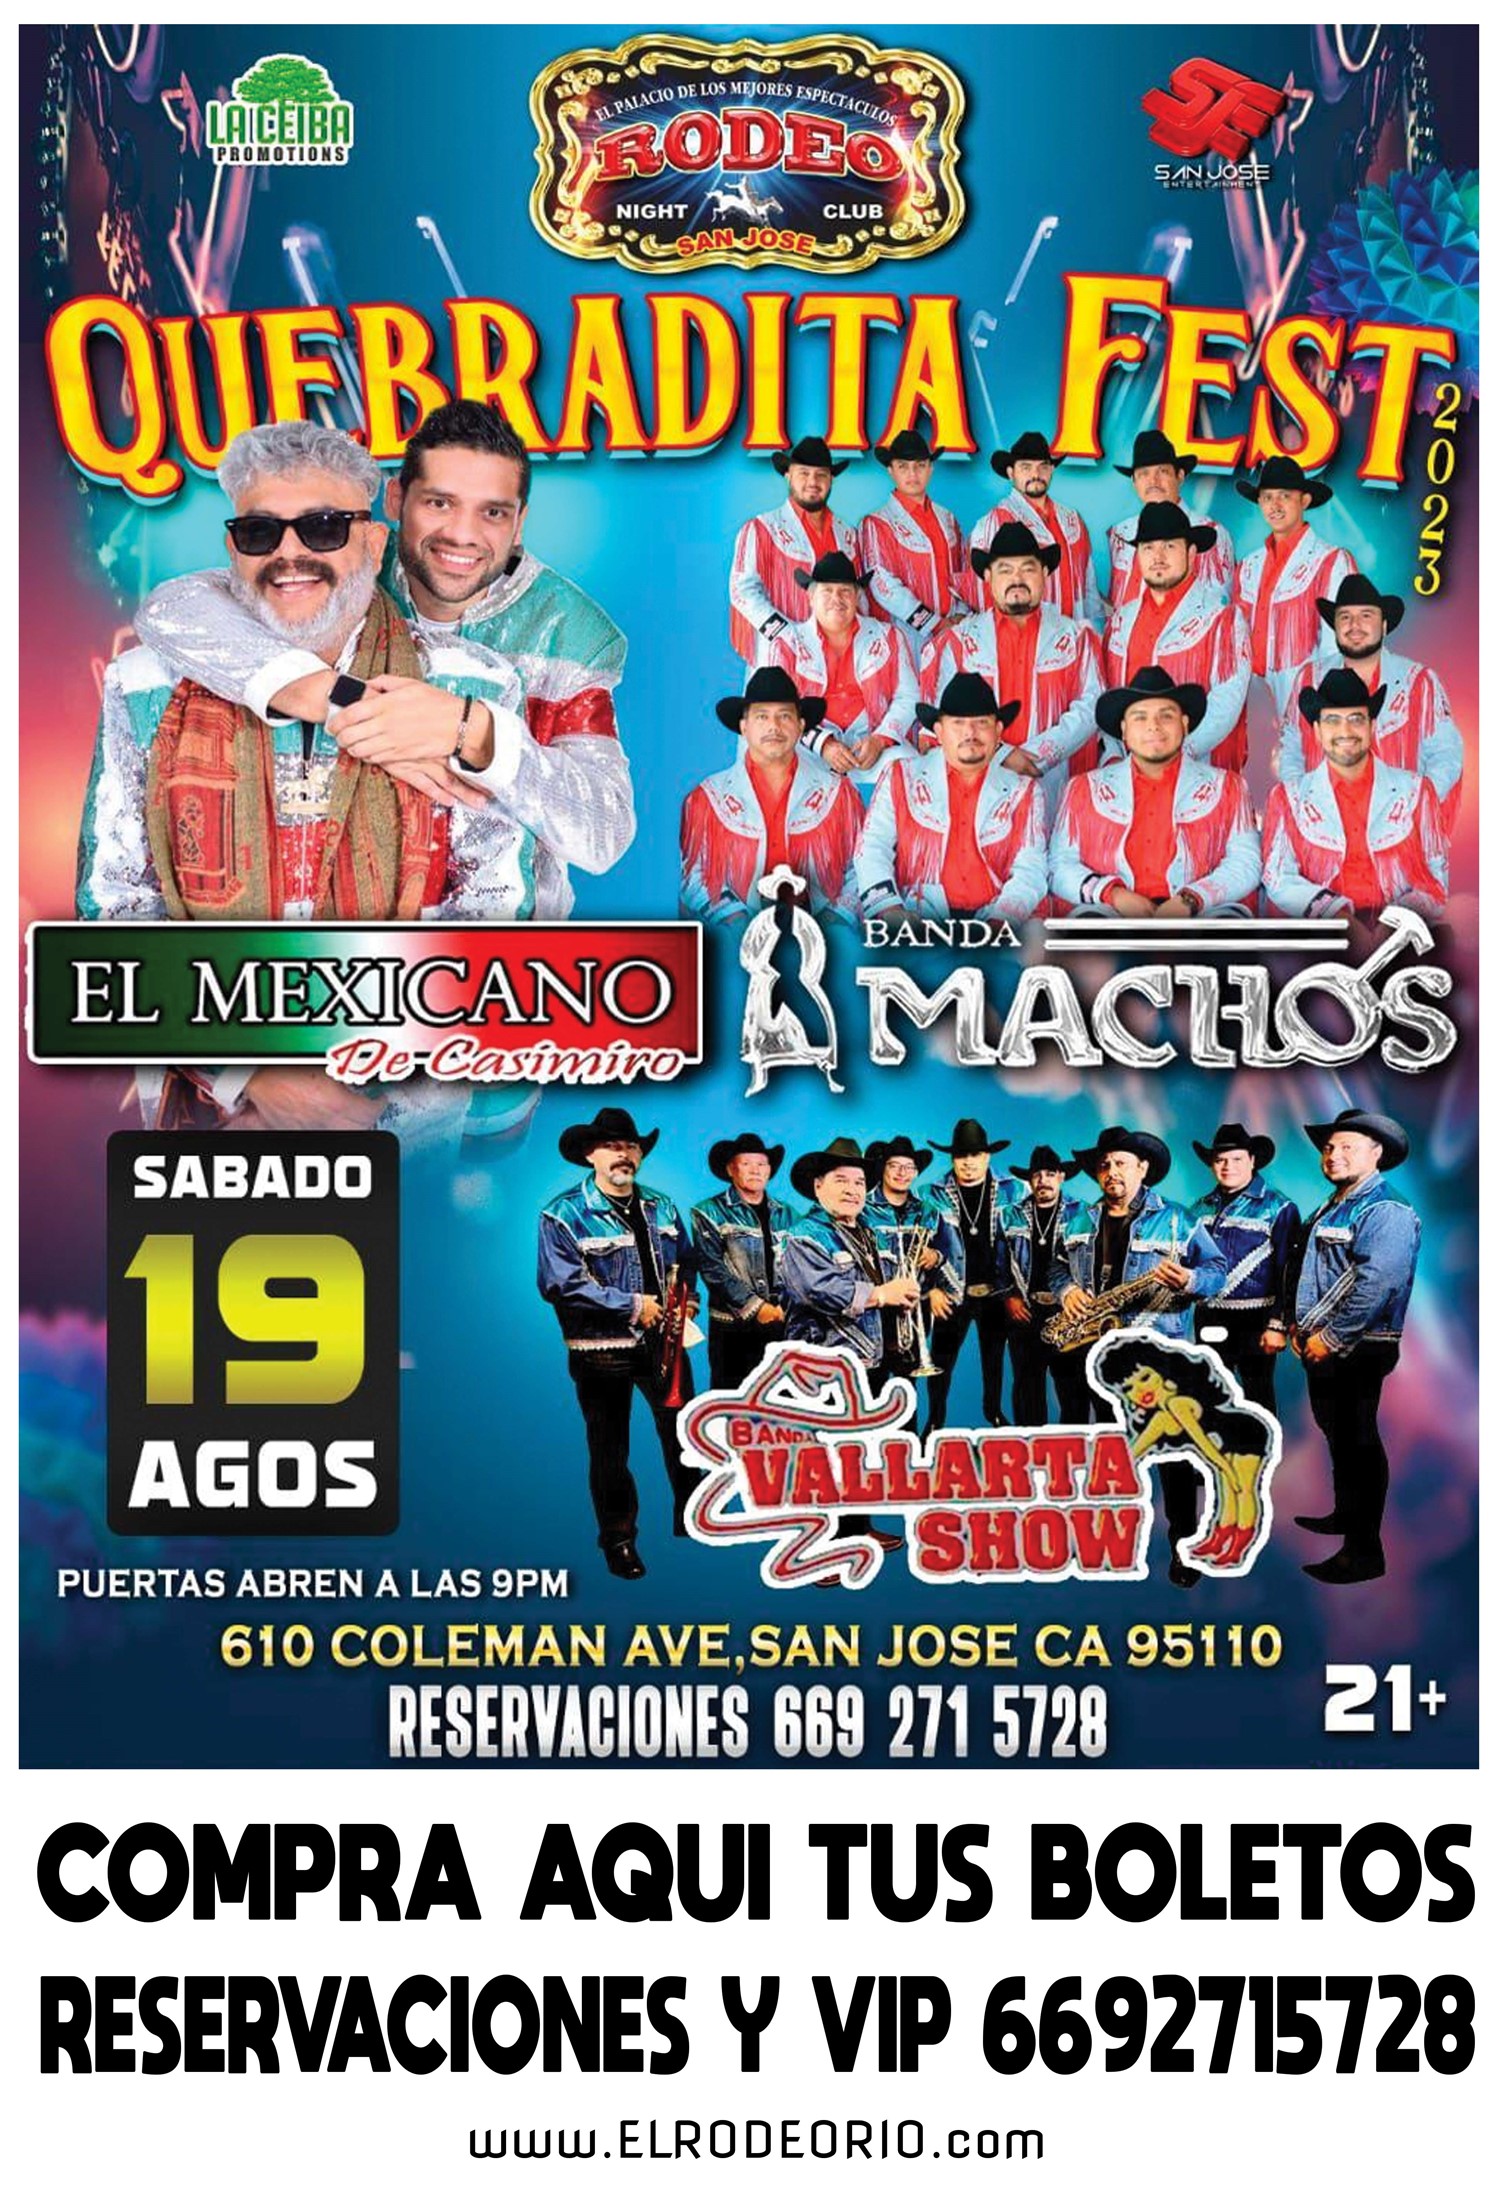 Quebradita Fest 2023 Banda El Mexicano,Banda Machos y Banda Vallarta